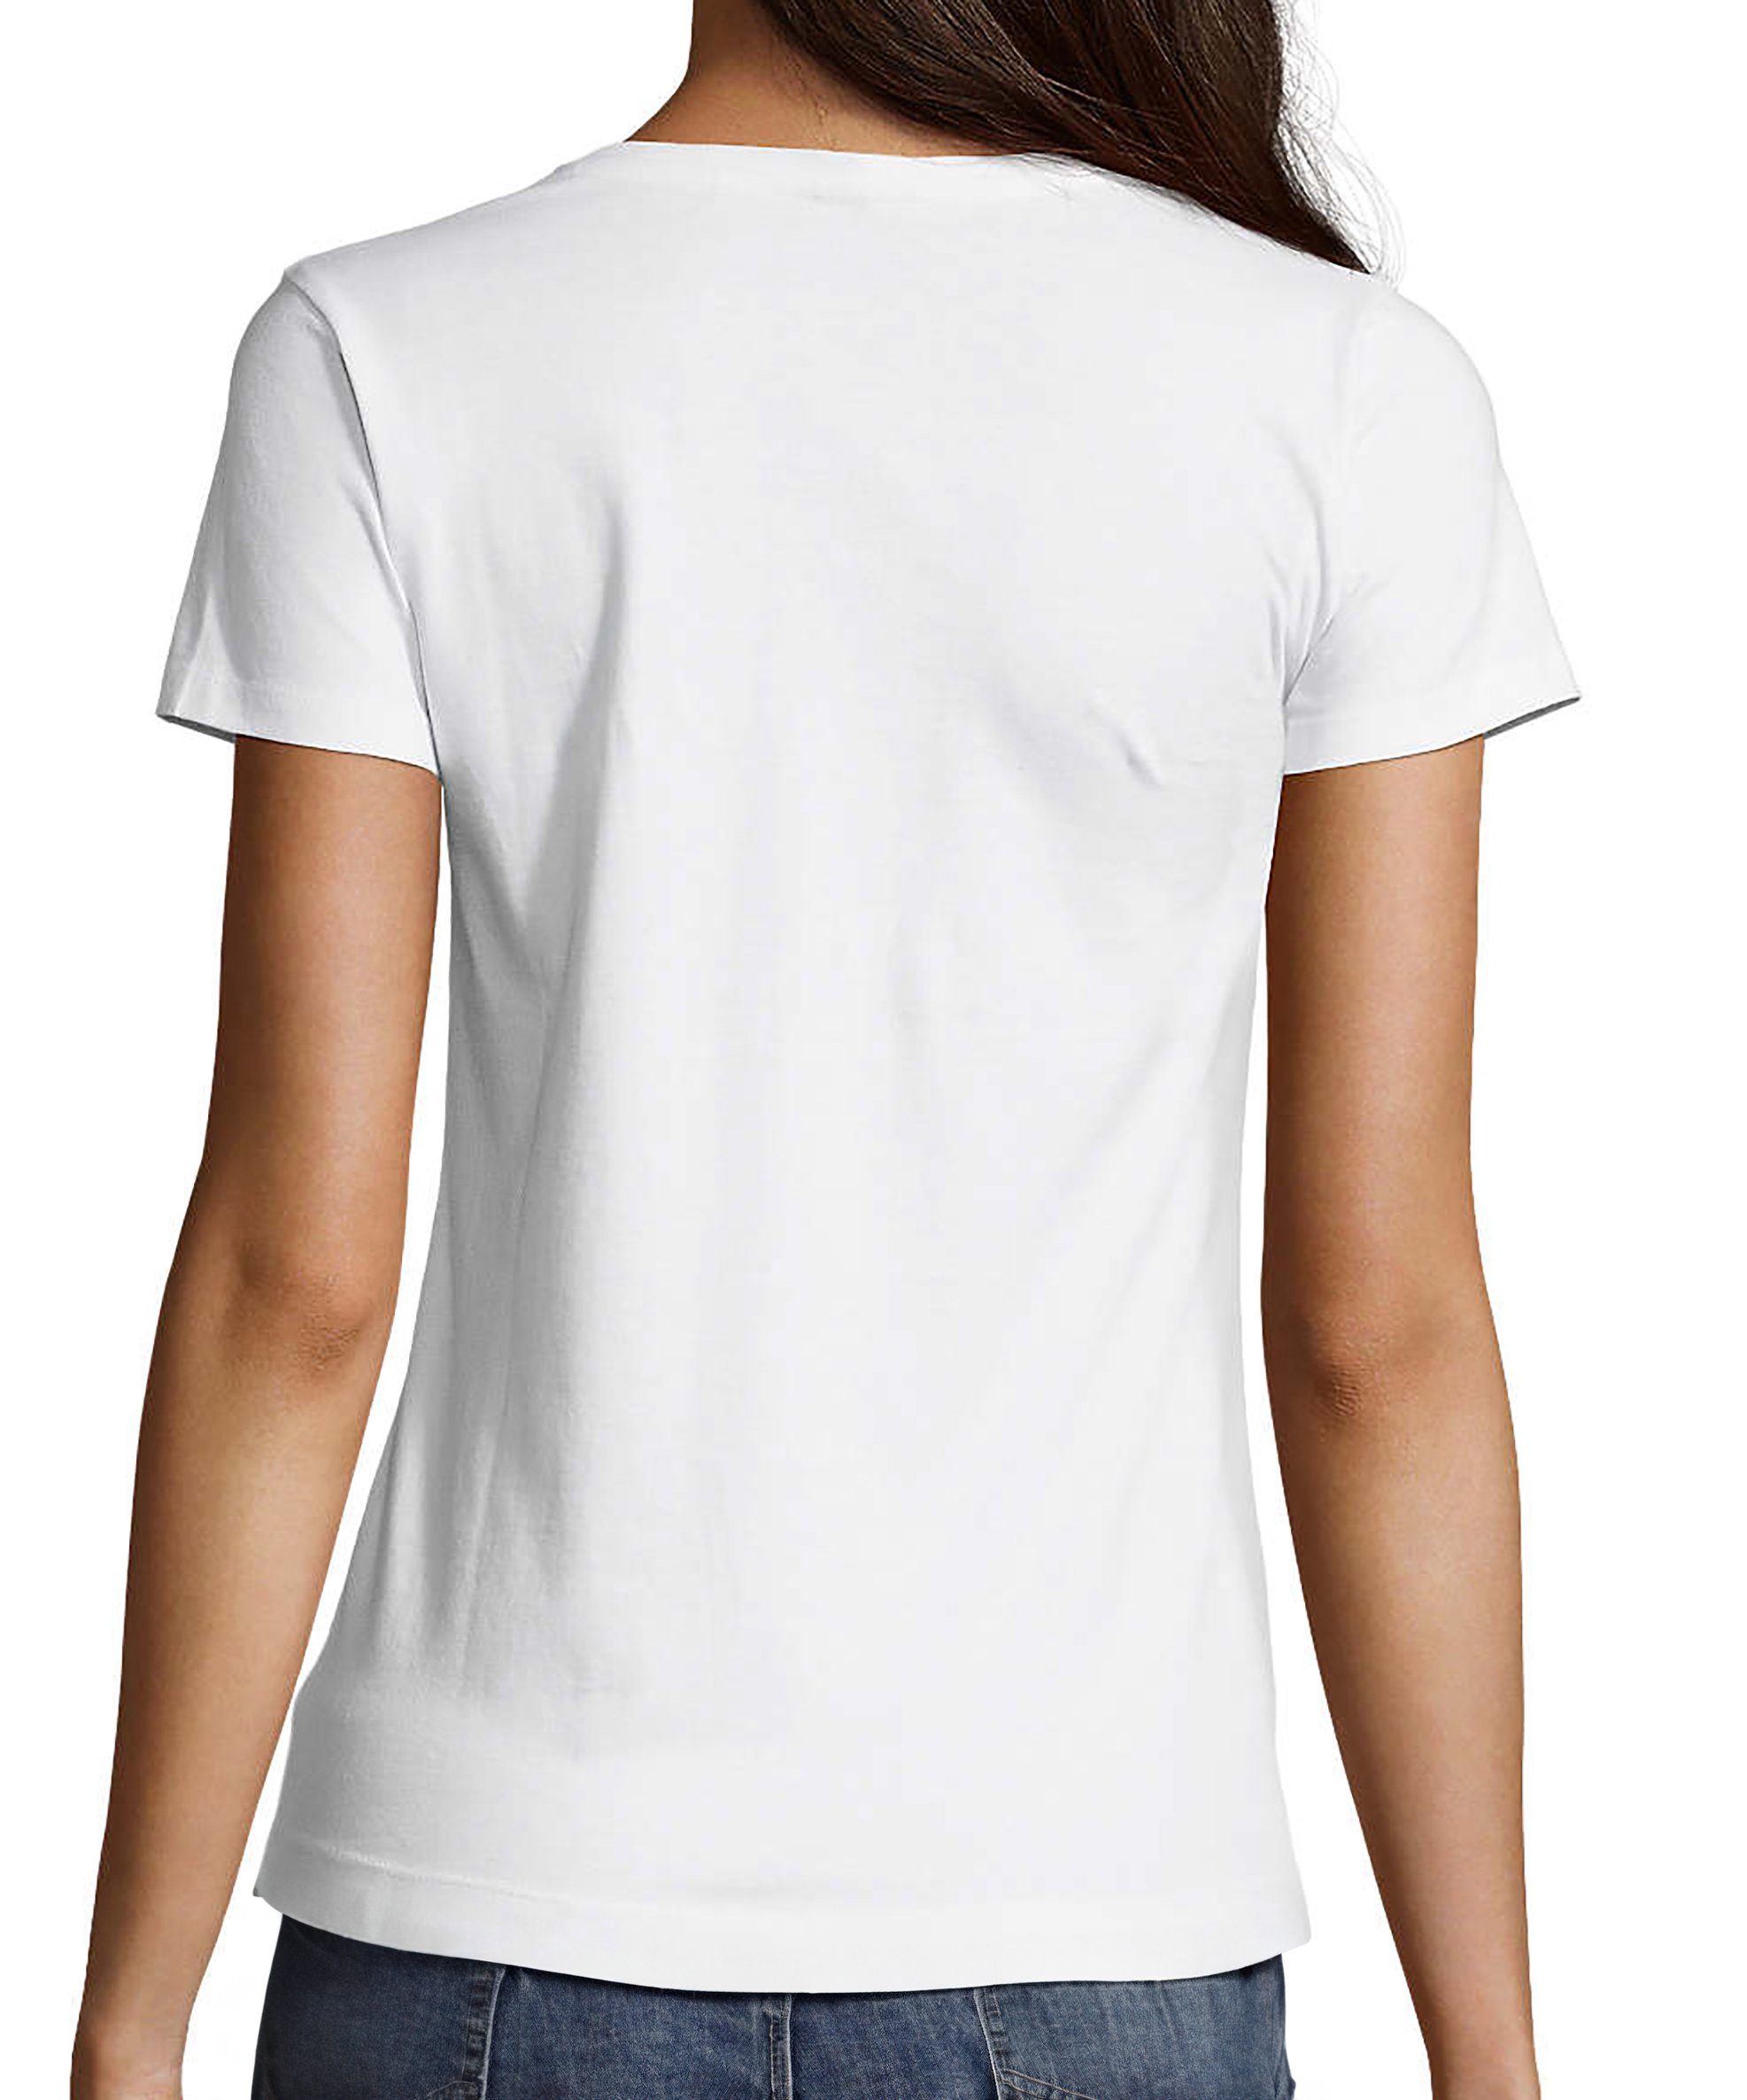 Herzen Fit, mit mit Pinke Print Baumwollshirt weiss T-Shirt i122 bedruckt Katze Aufdruck, MyDesign24 Damen Katzen - Shirt Slim